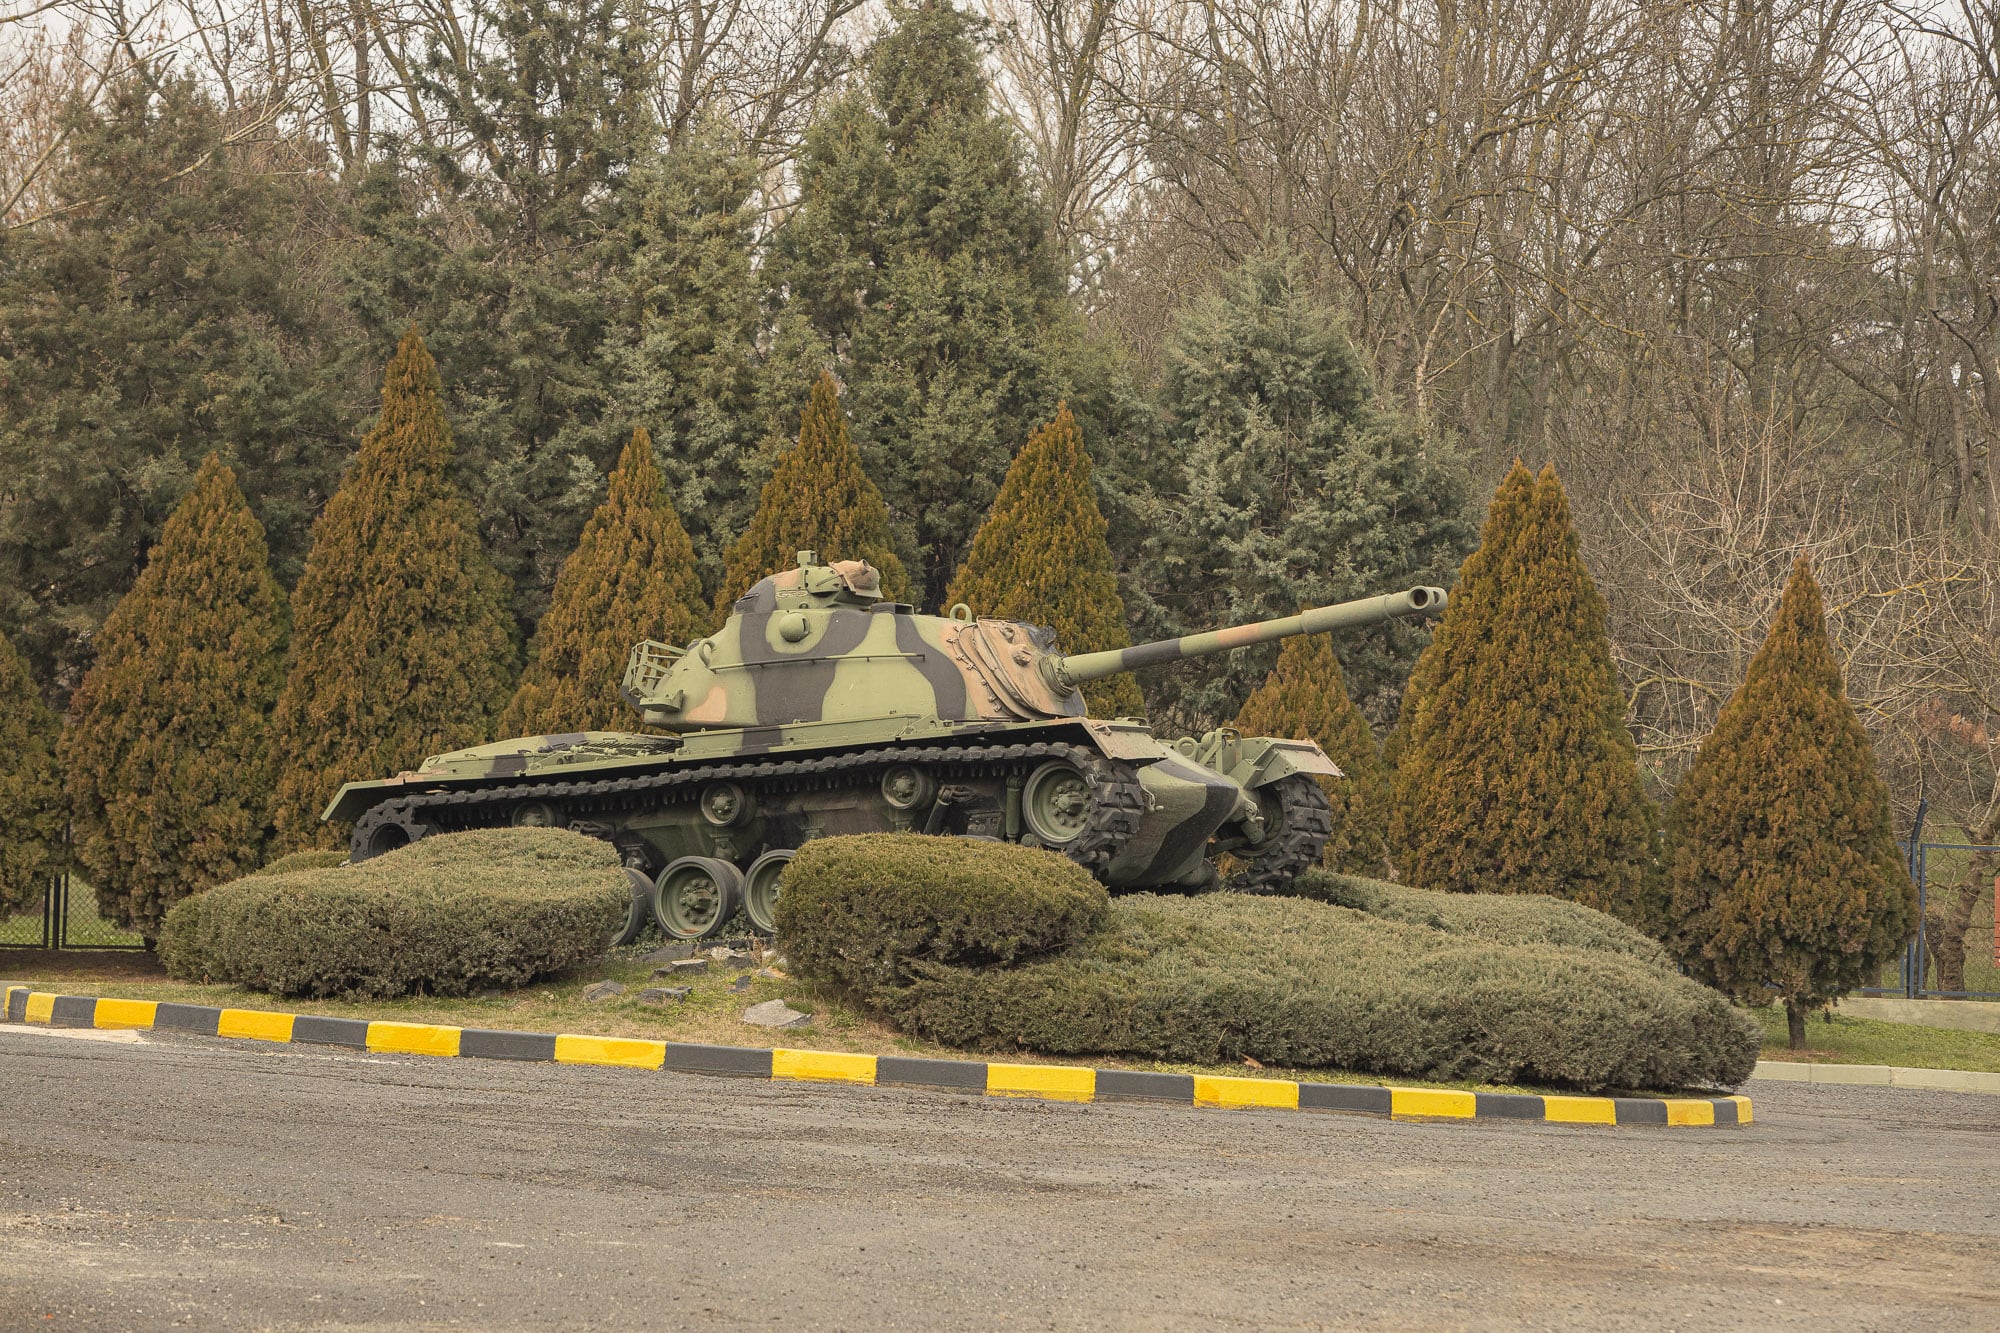 tank on display near Corlu